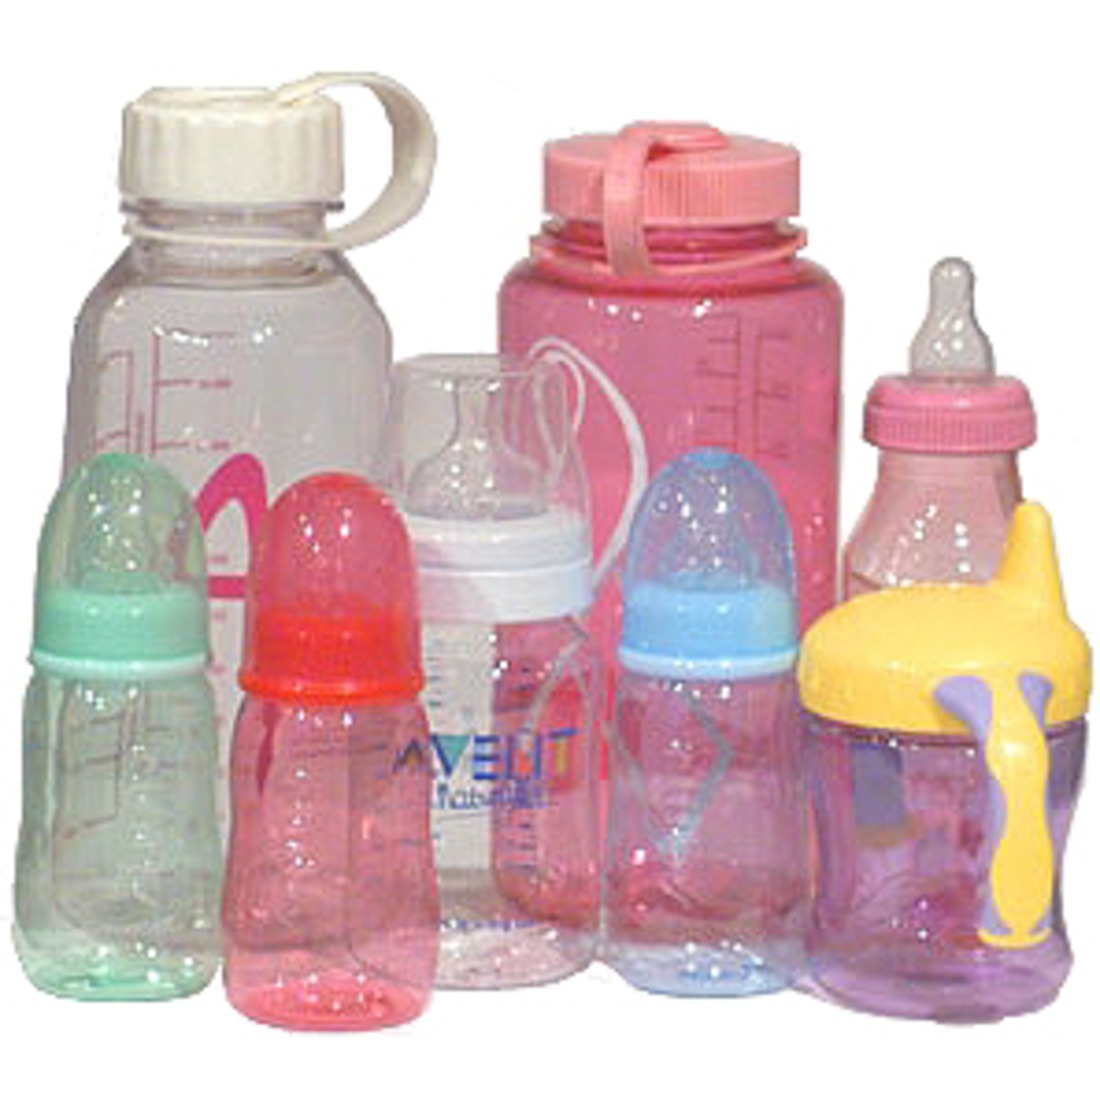 Как выглядит бутылочка. Бутылочка детская Bisphenol a. Пластиковые бутылочки для детей. Детские пластмассовые бутылочки. Деткая бутылочка Пластишка.